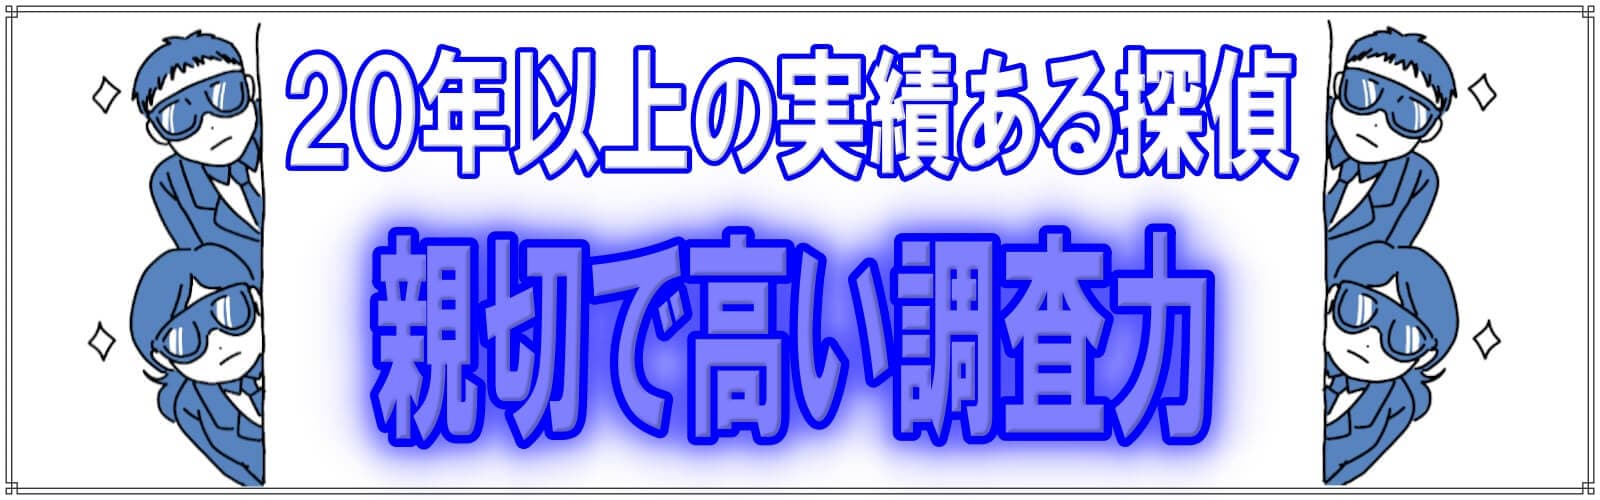 探偵興信所の浮気調査は千葉県松戸市のラブ探偵事務所